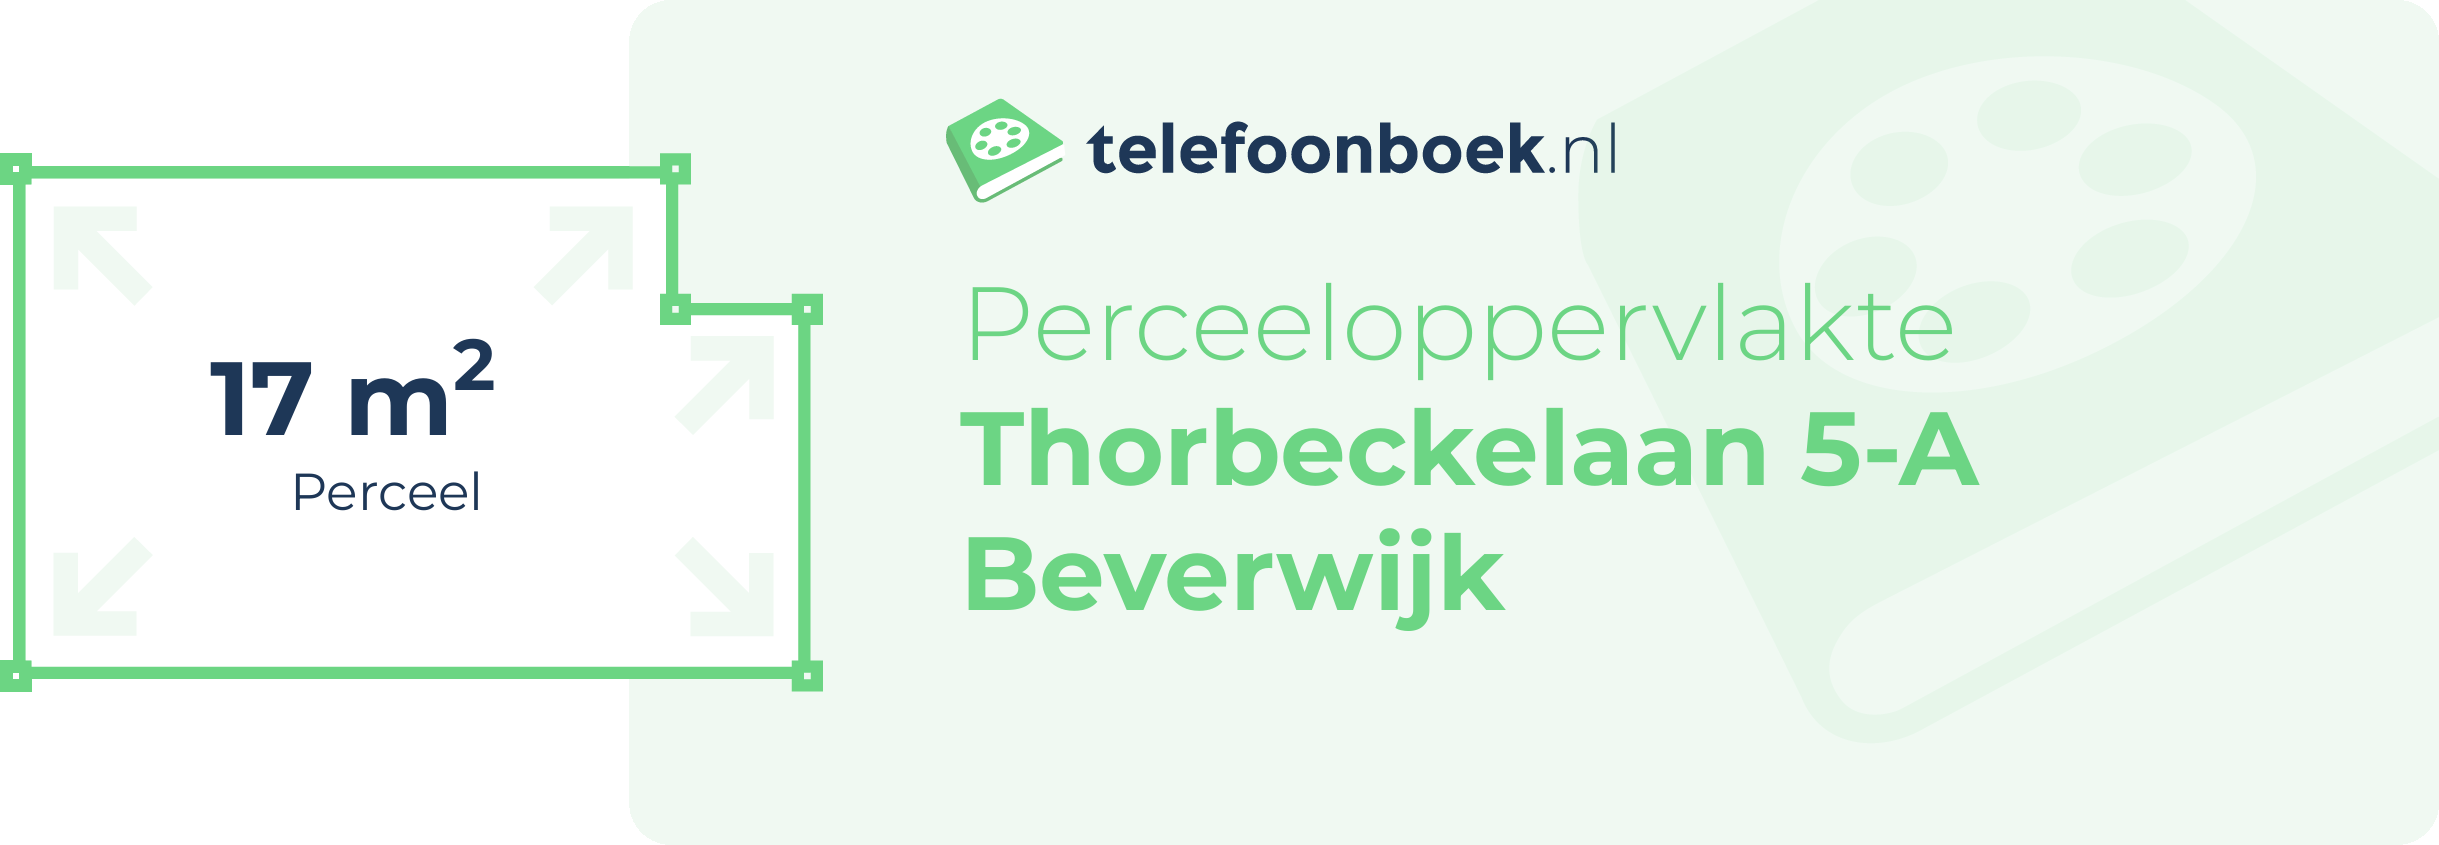 Perceeloppervlakte Thorbeckelaan 5-A Beverwijk